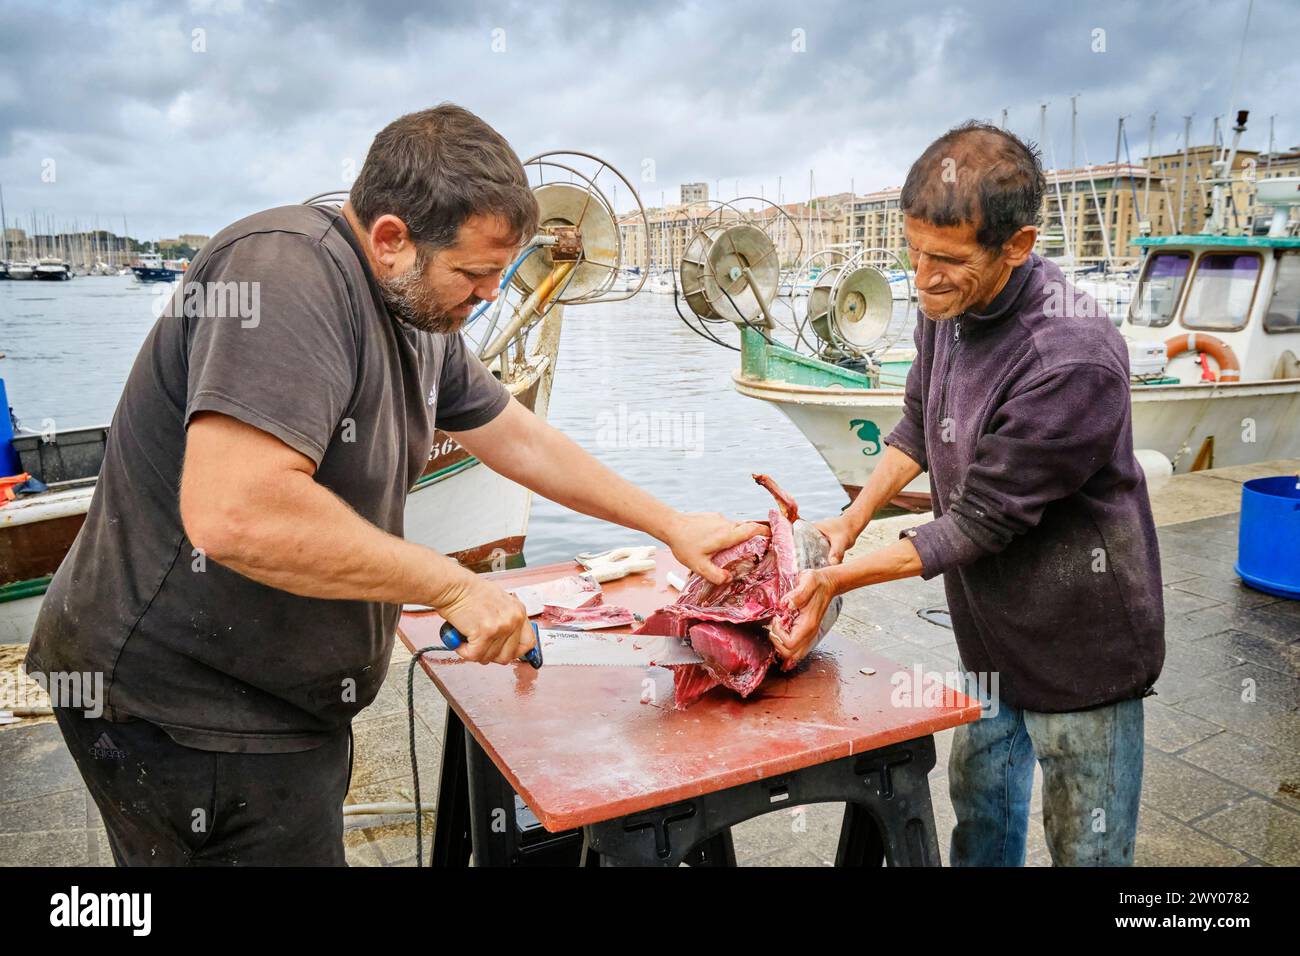 Marché aux poissons au Vieux Port en plein centre-ville au bord de la mer Méditerranée. Marseille, France Banque D'Images